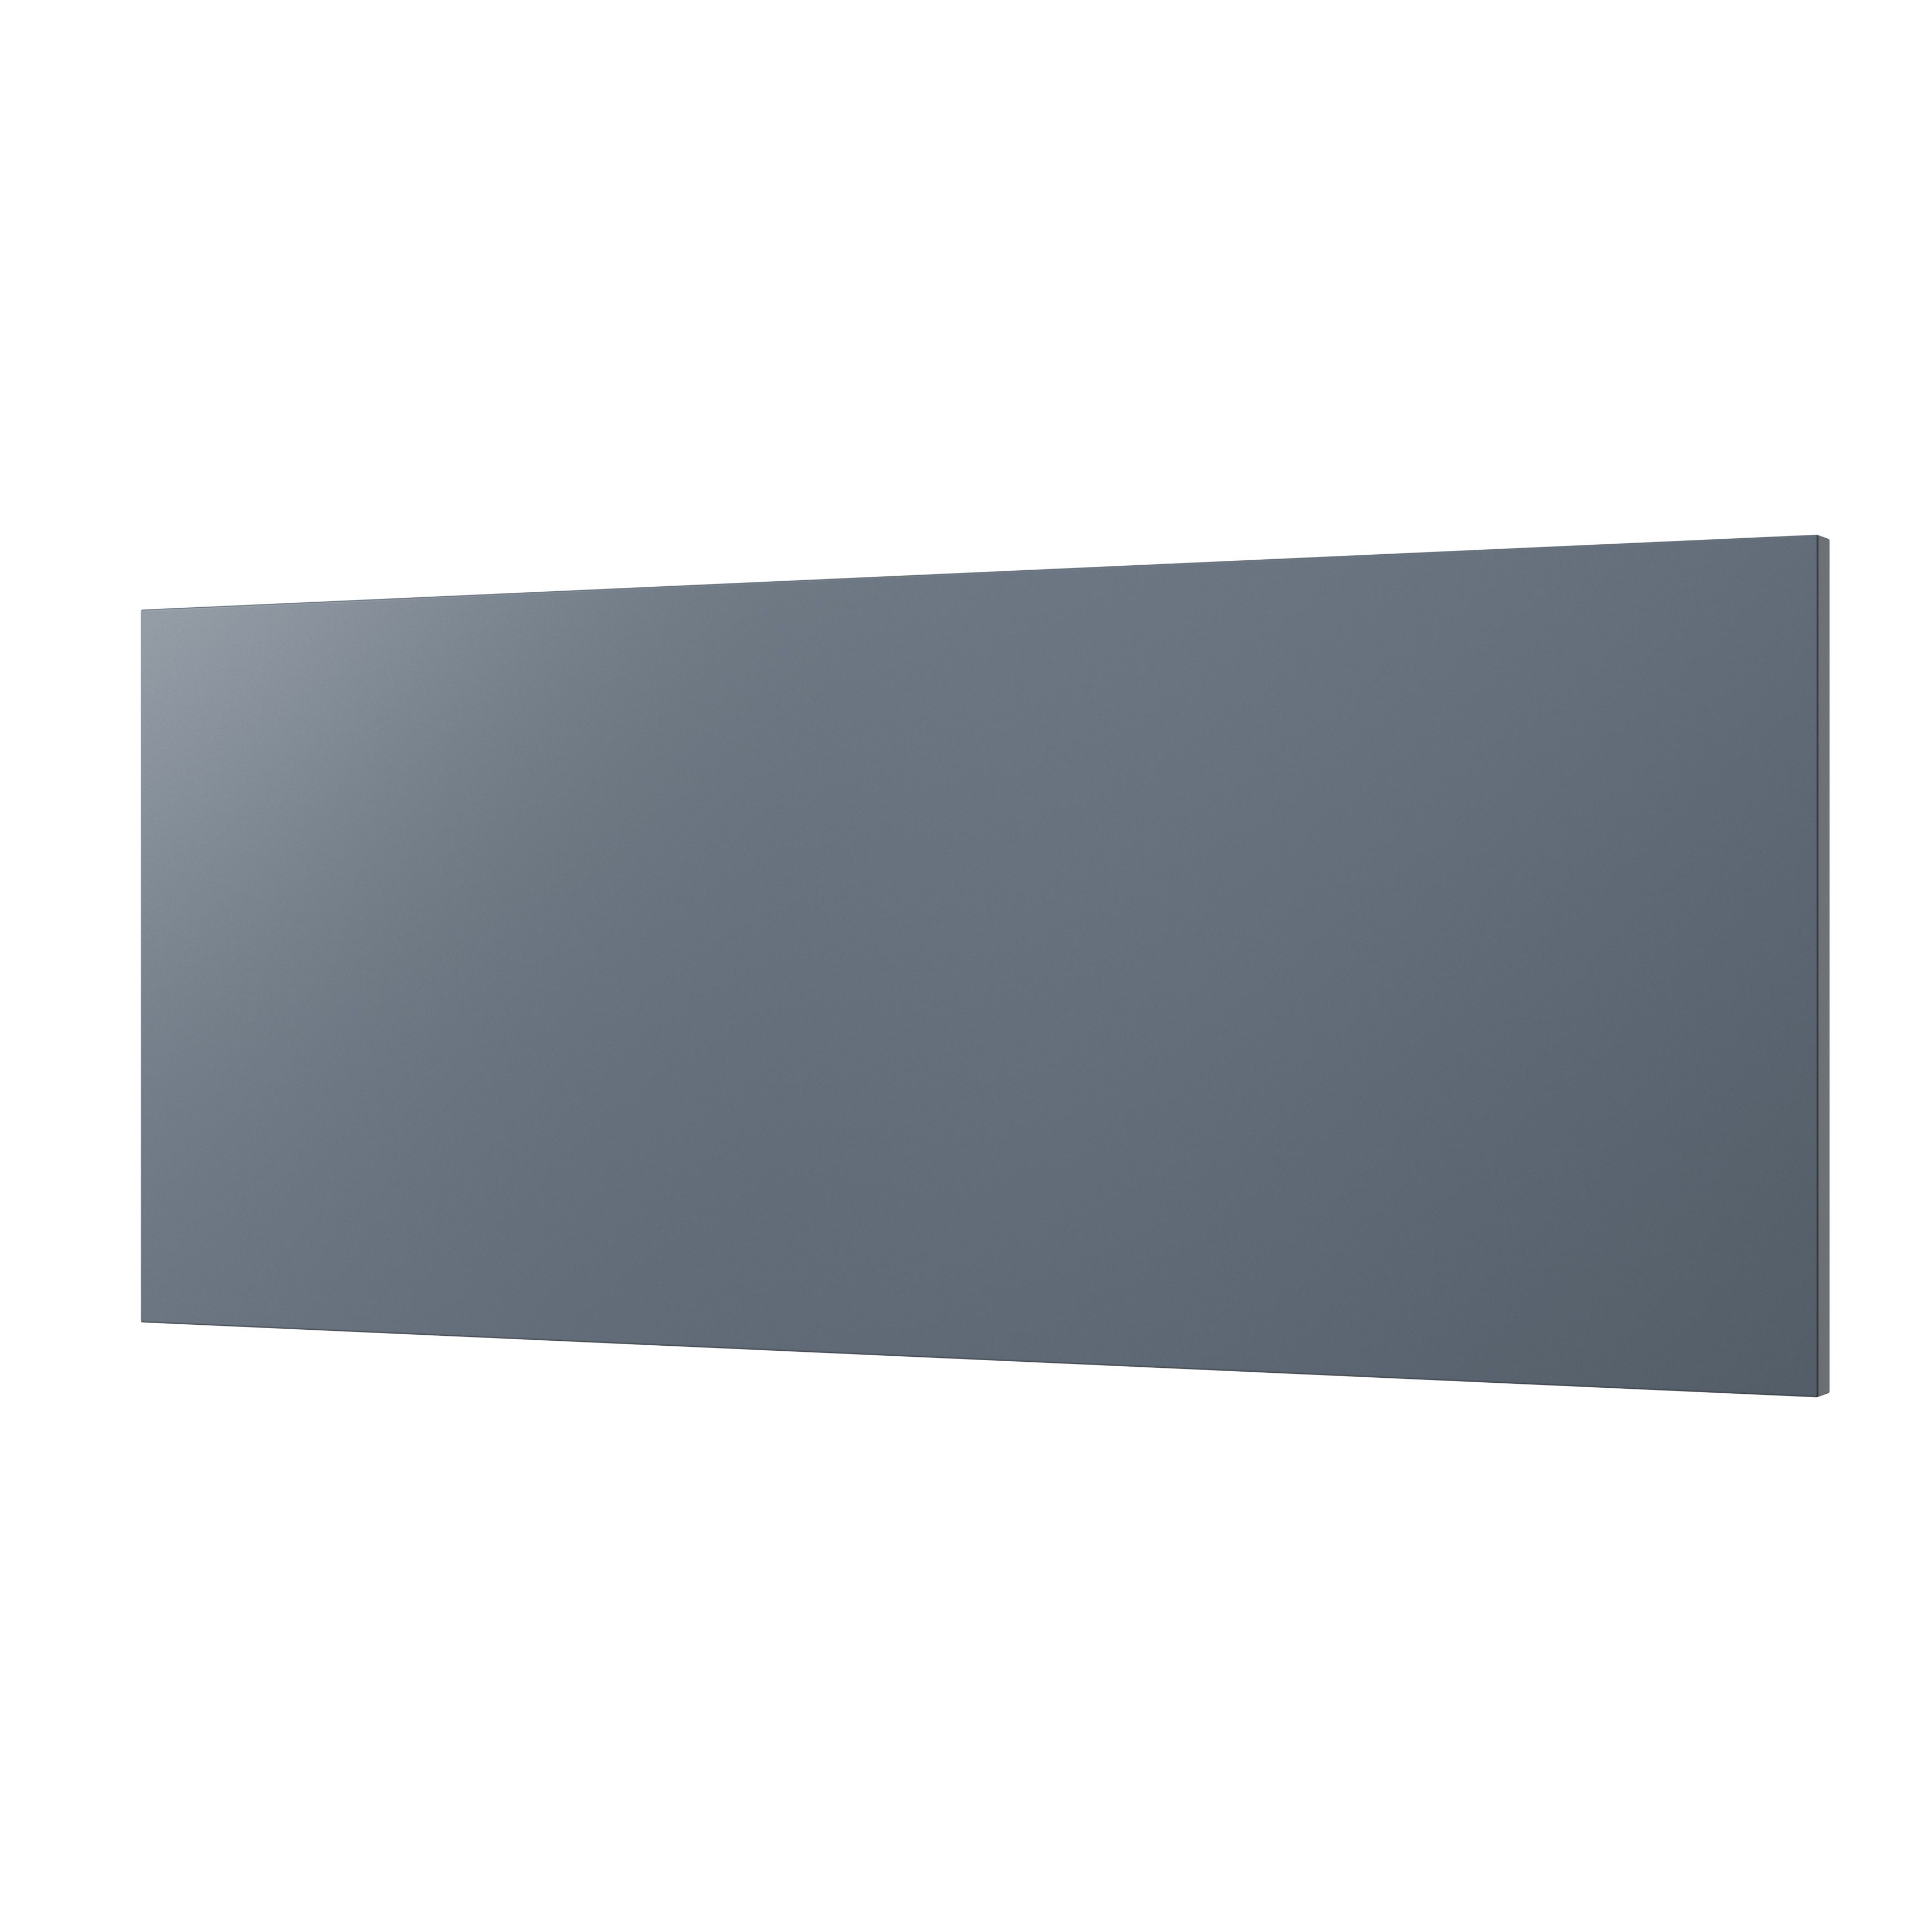 GoodHome Alisma Matt blue slab Drawer front, bridging door & bi fold door (W)800mm, Pack of 2